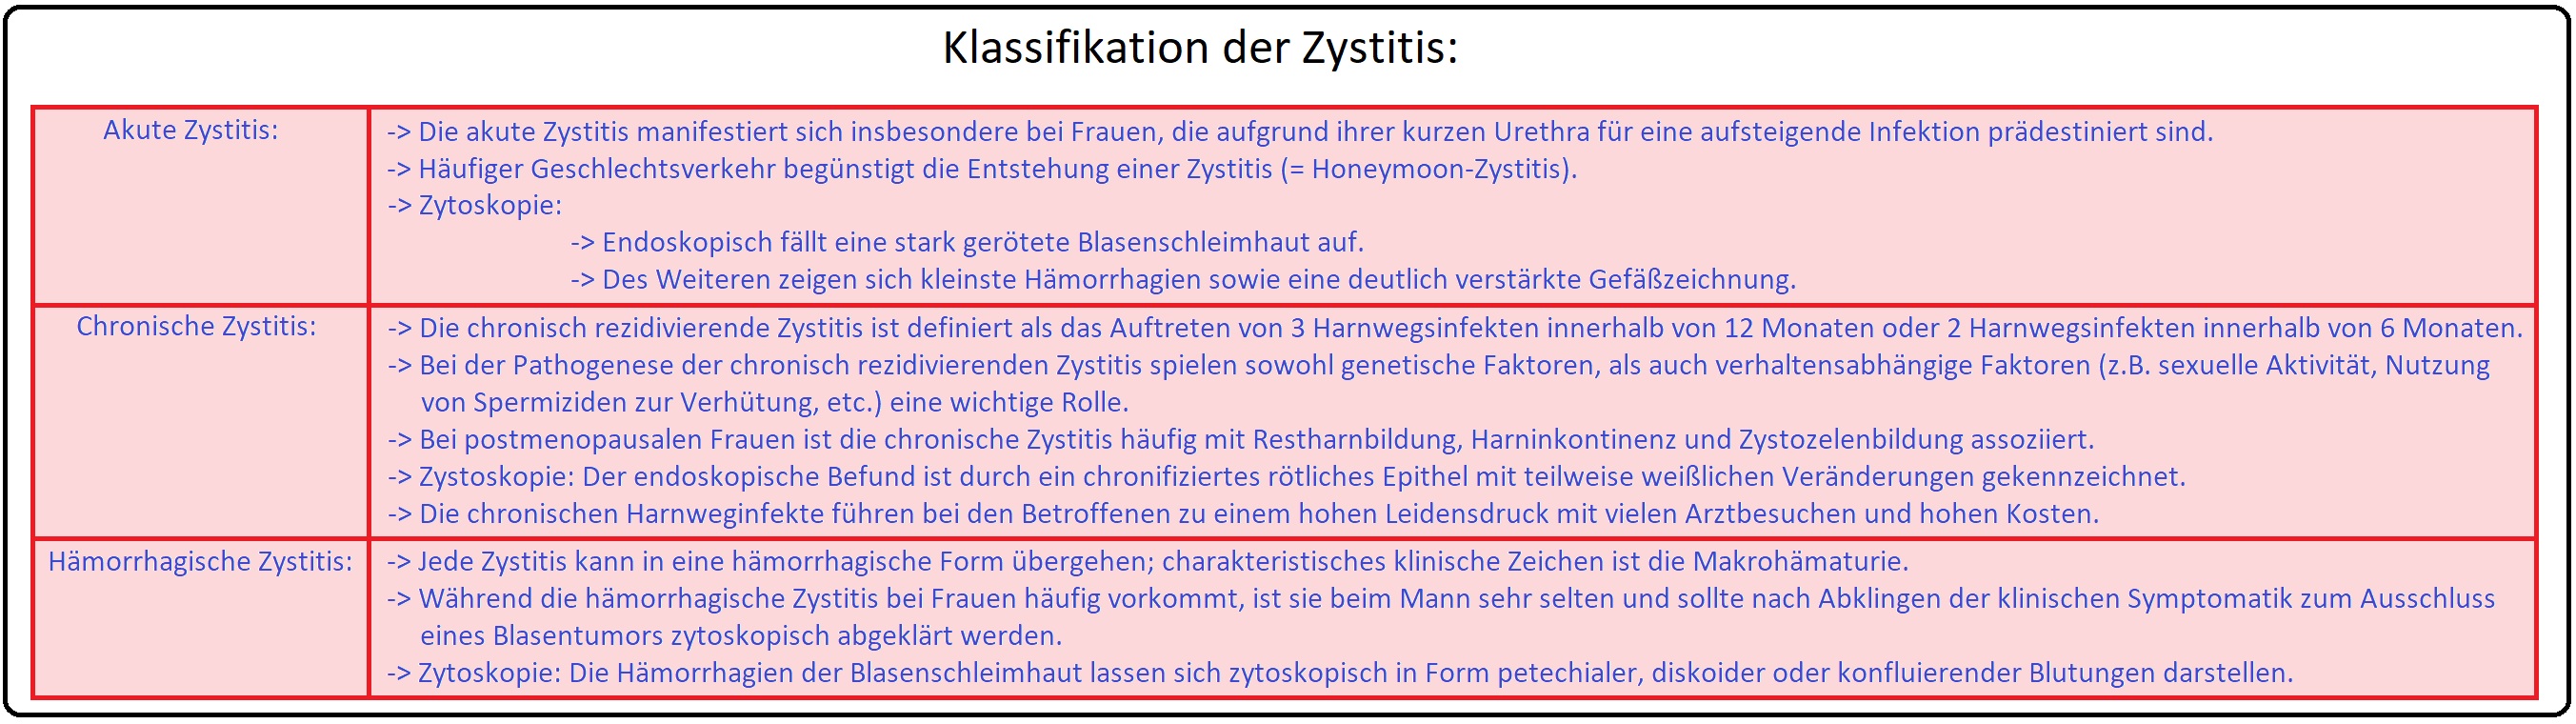 948 Klassifikation der Zystitis